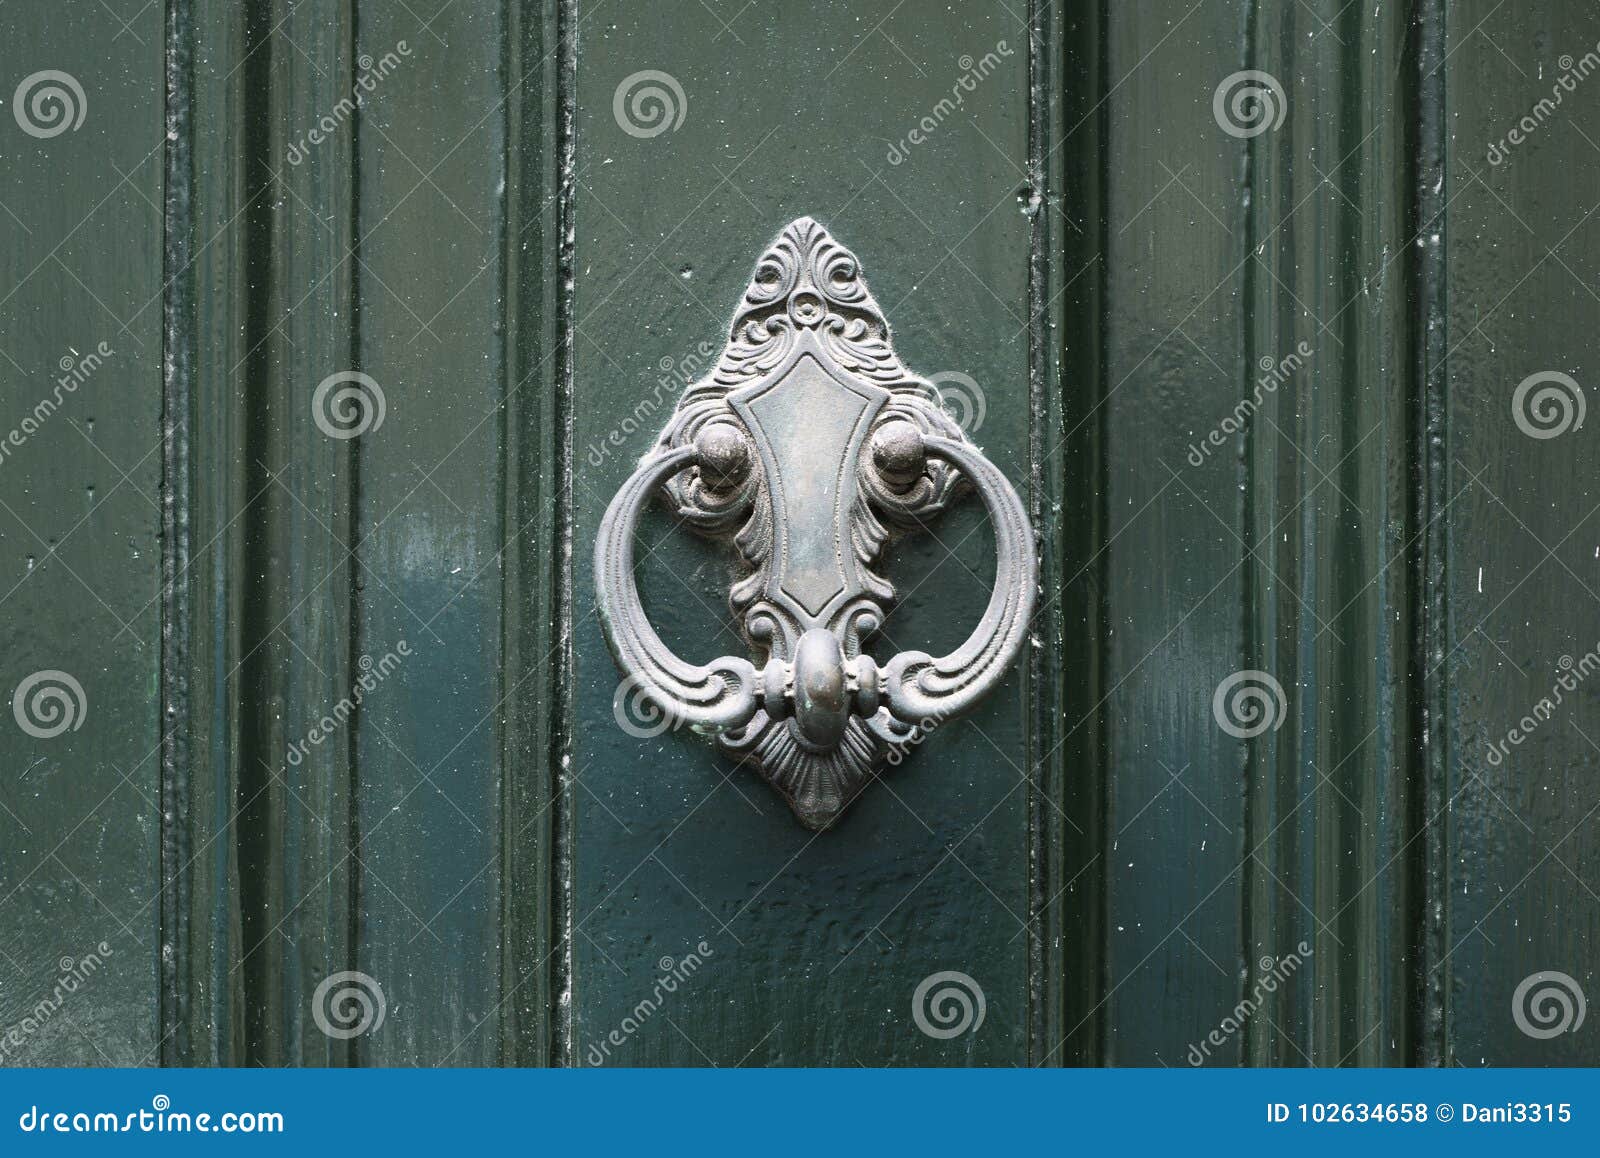 vintage antiqued door knocker on wooden green door